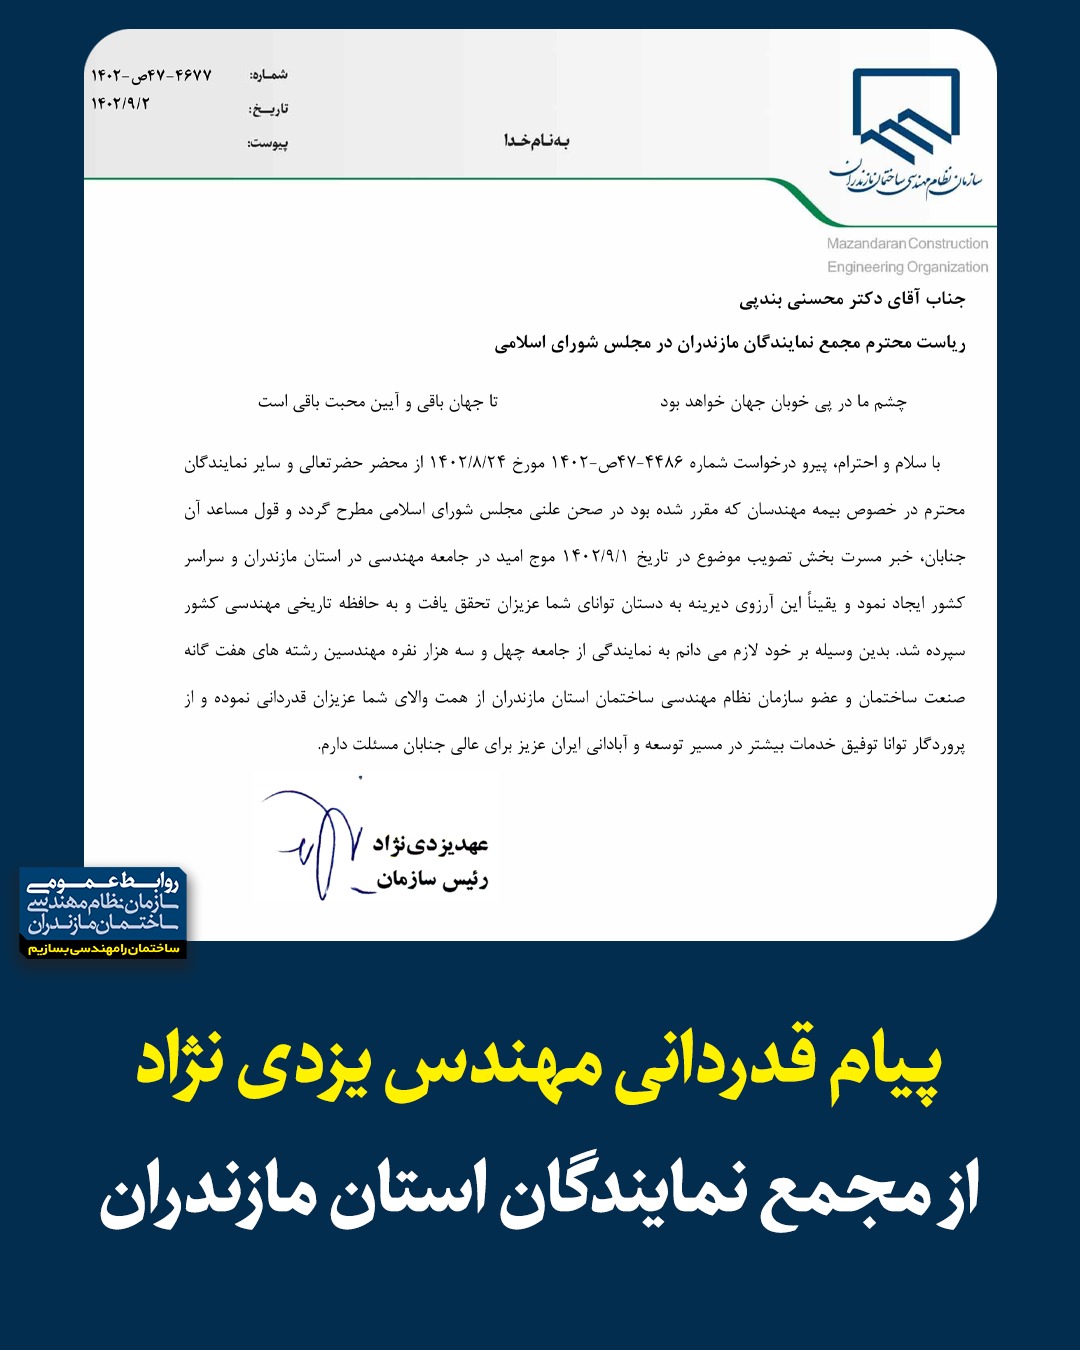 پیام قدردانی مهندس یزدی نژاد از مجمع نمایندگان استان مازندران